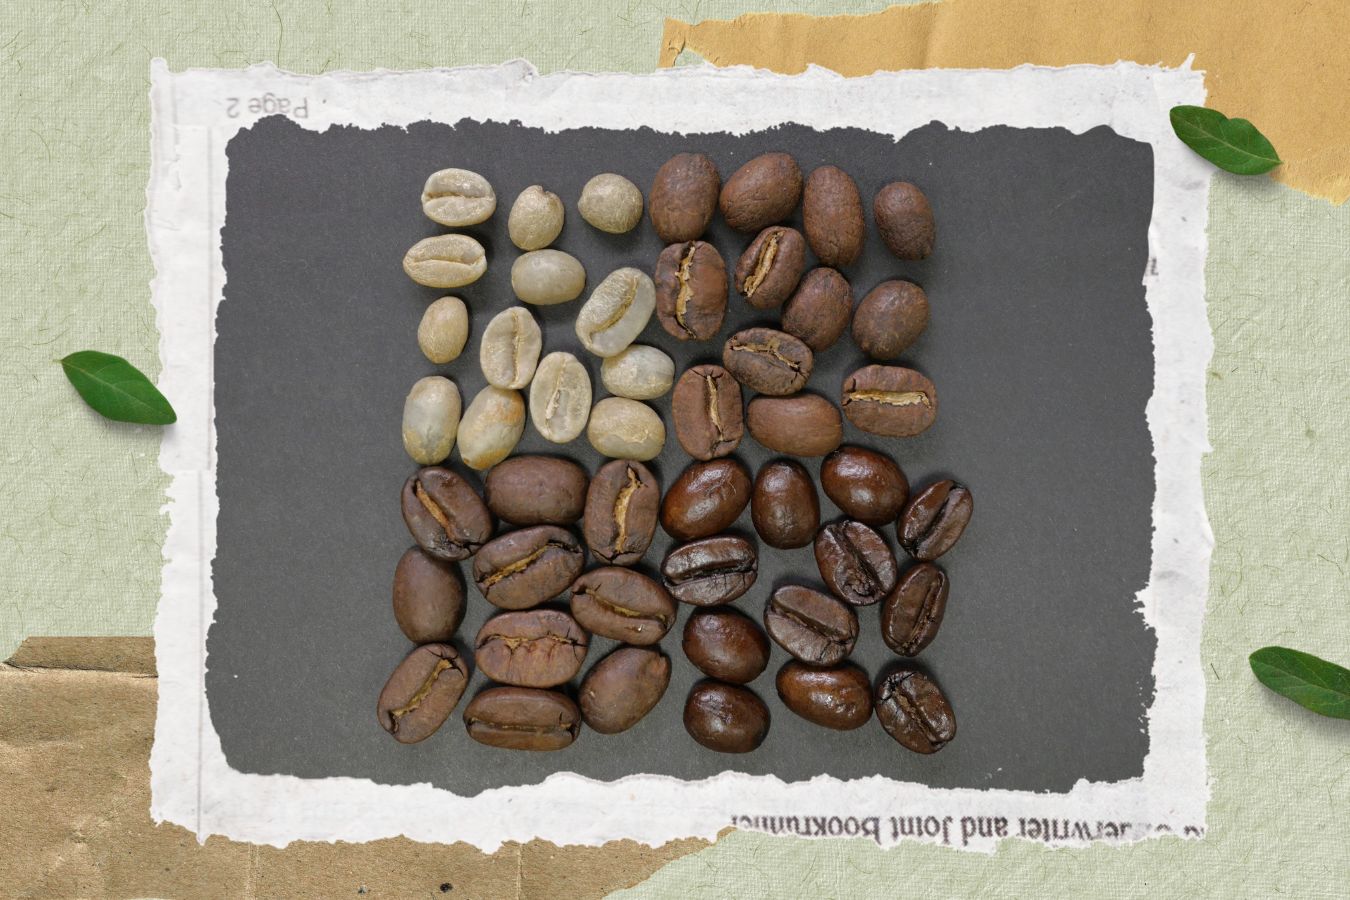 arabica vs robusta beans